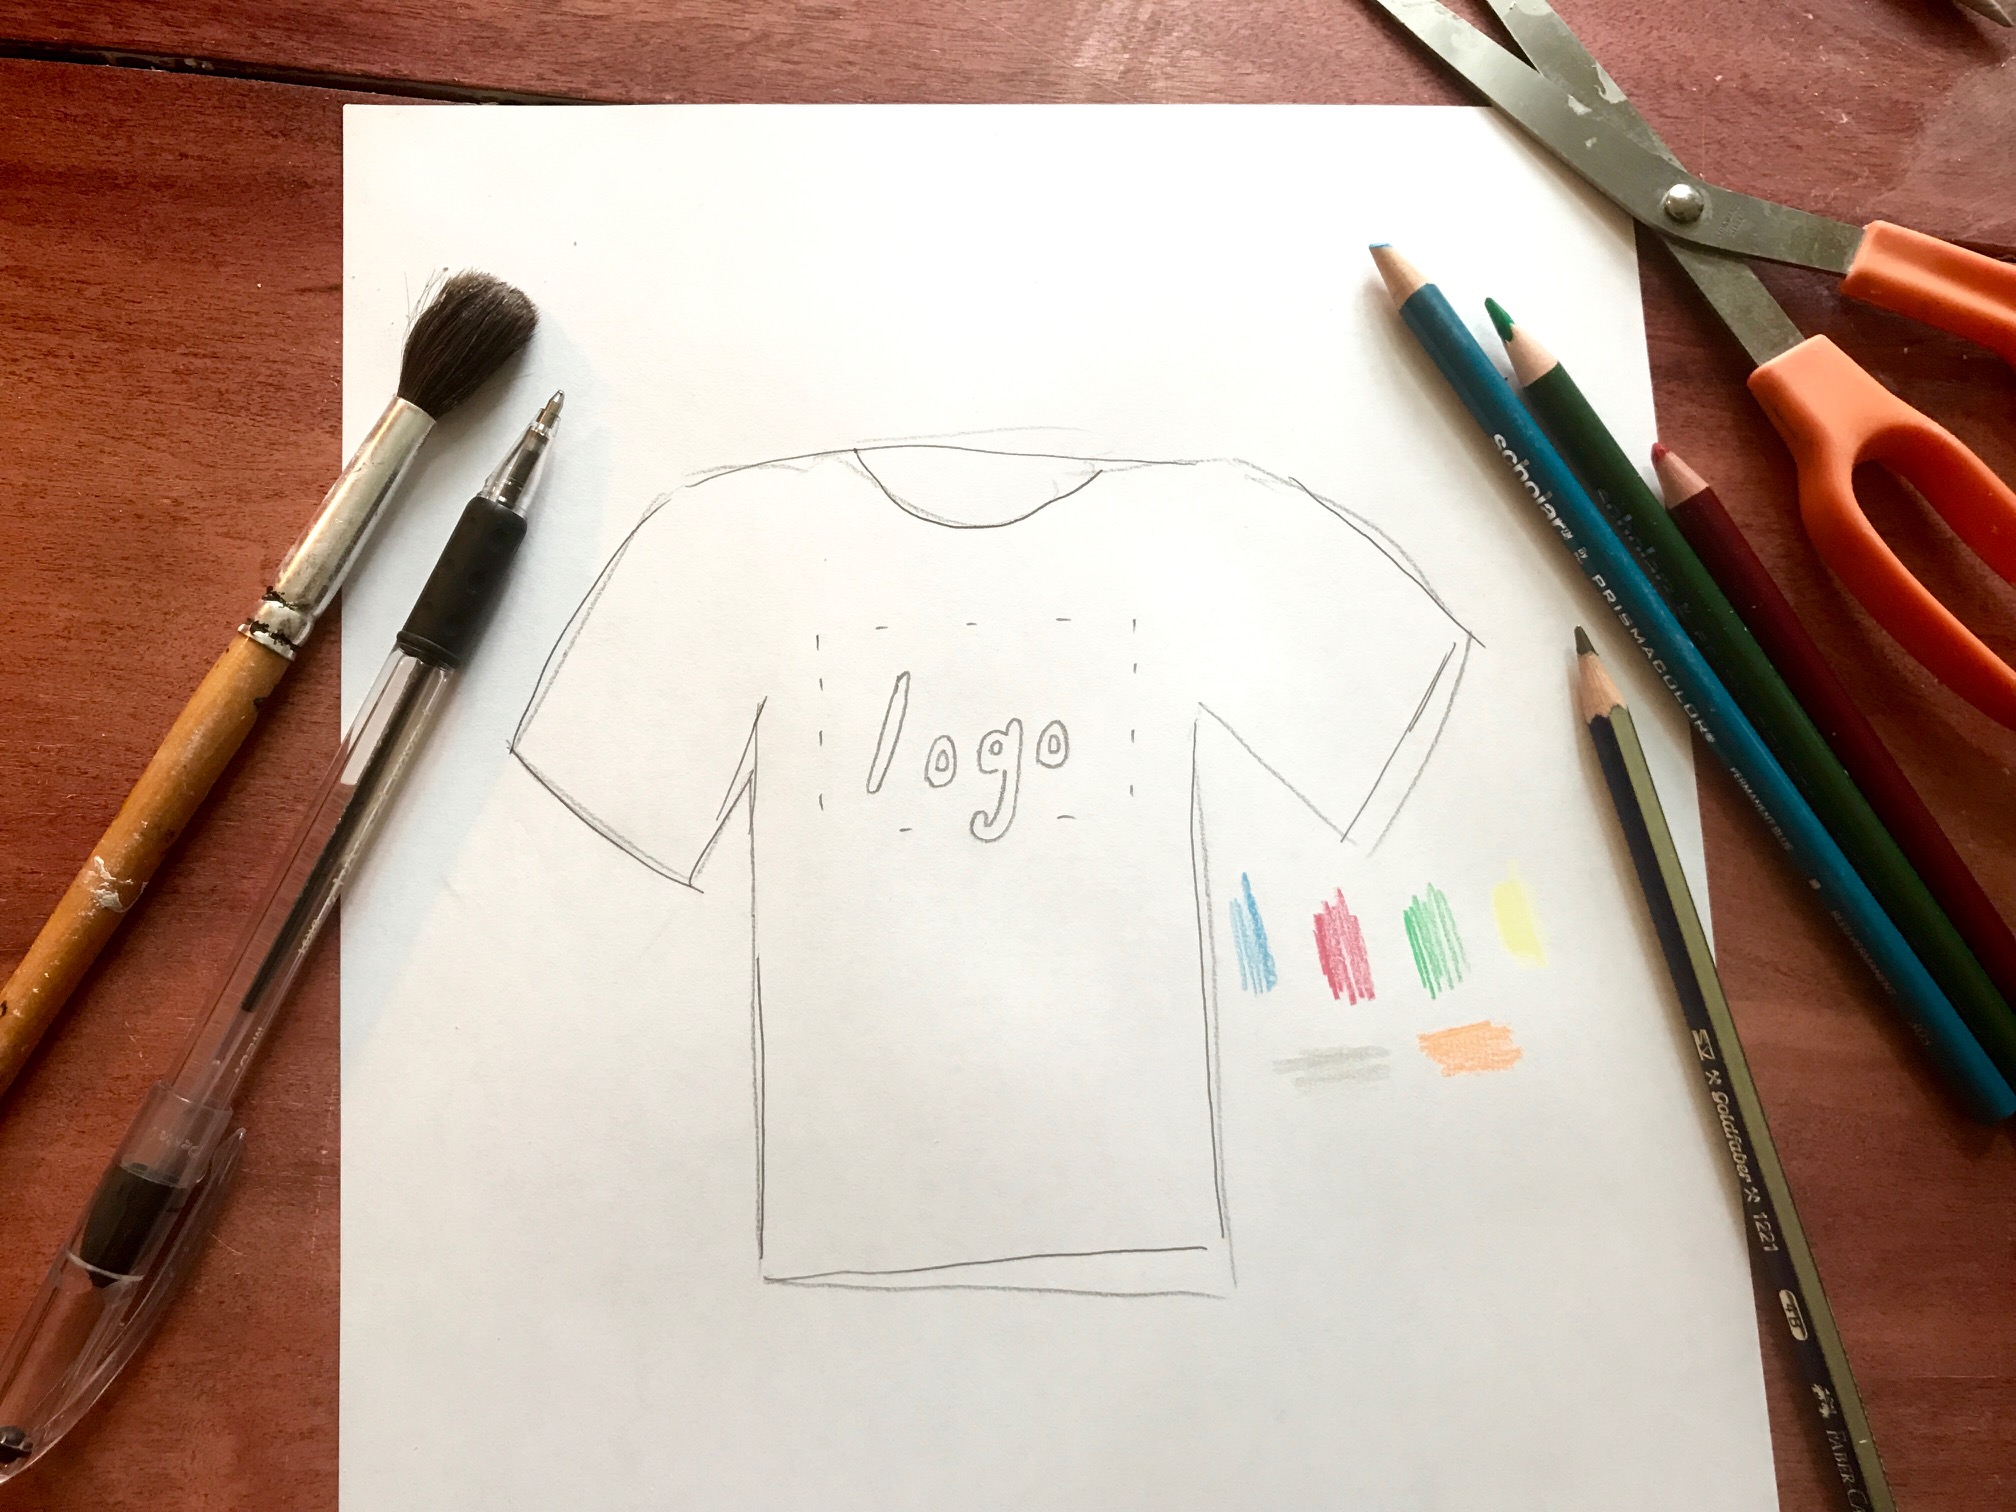 Custom t-shirt design from scratch